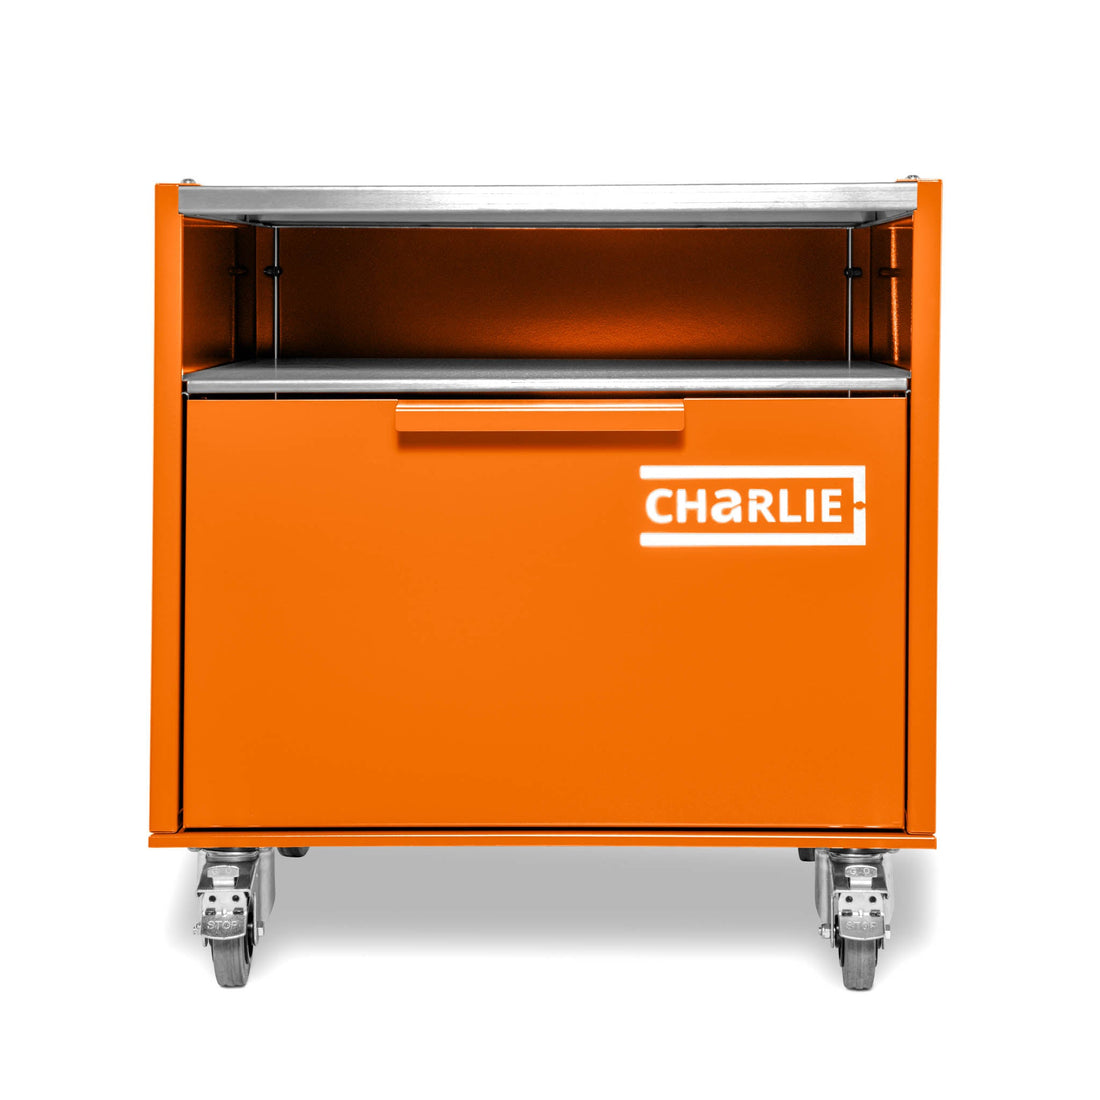 Charlie Base Cabinet - Saffron - Charlie Oven